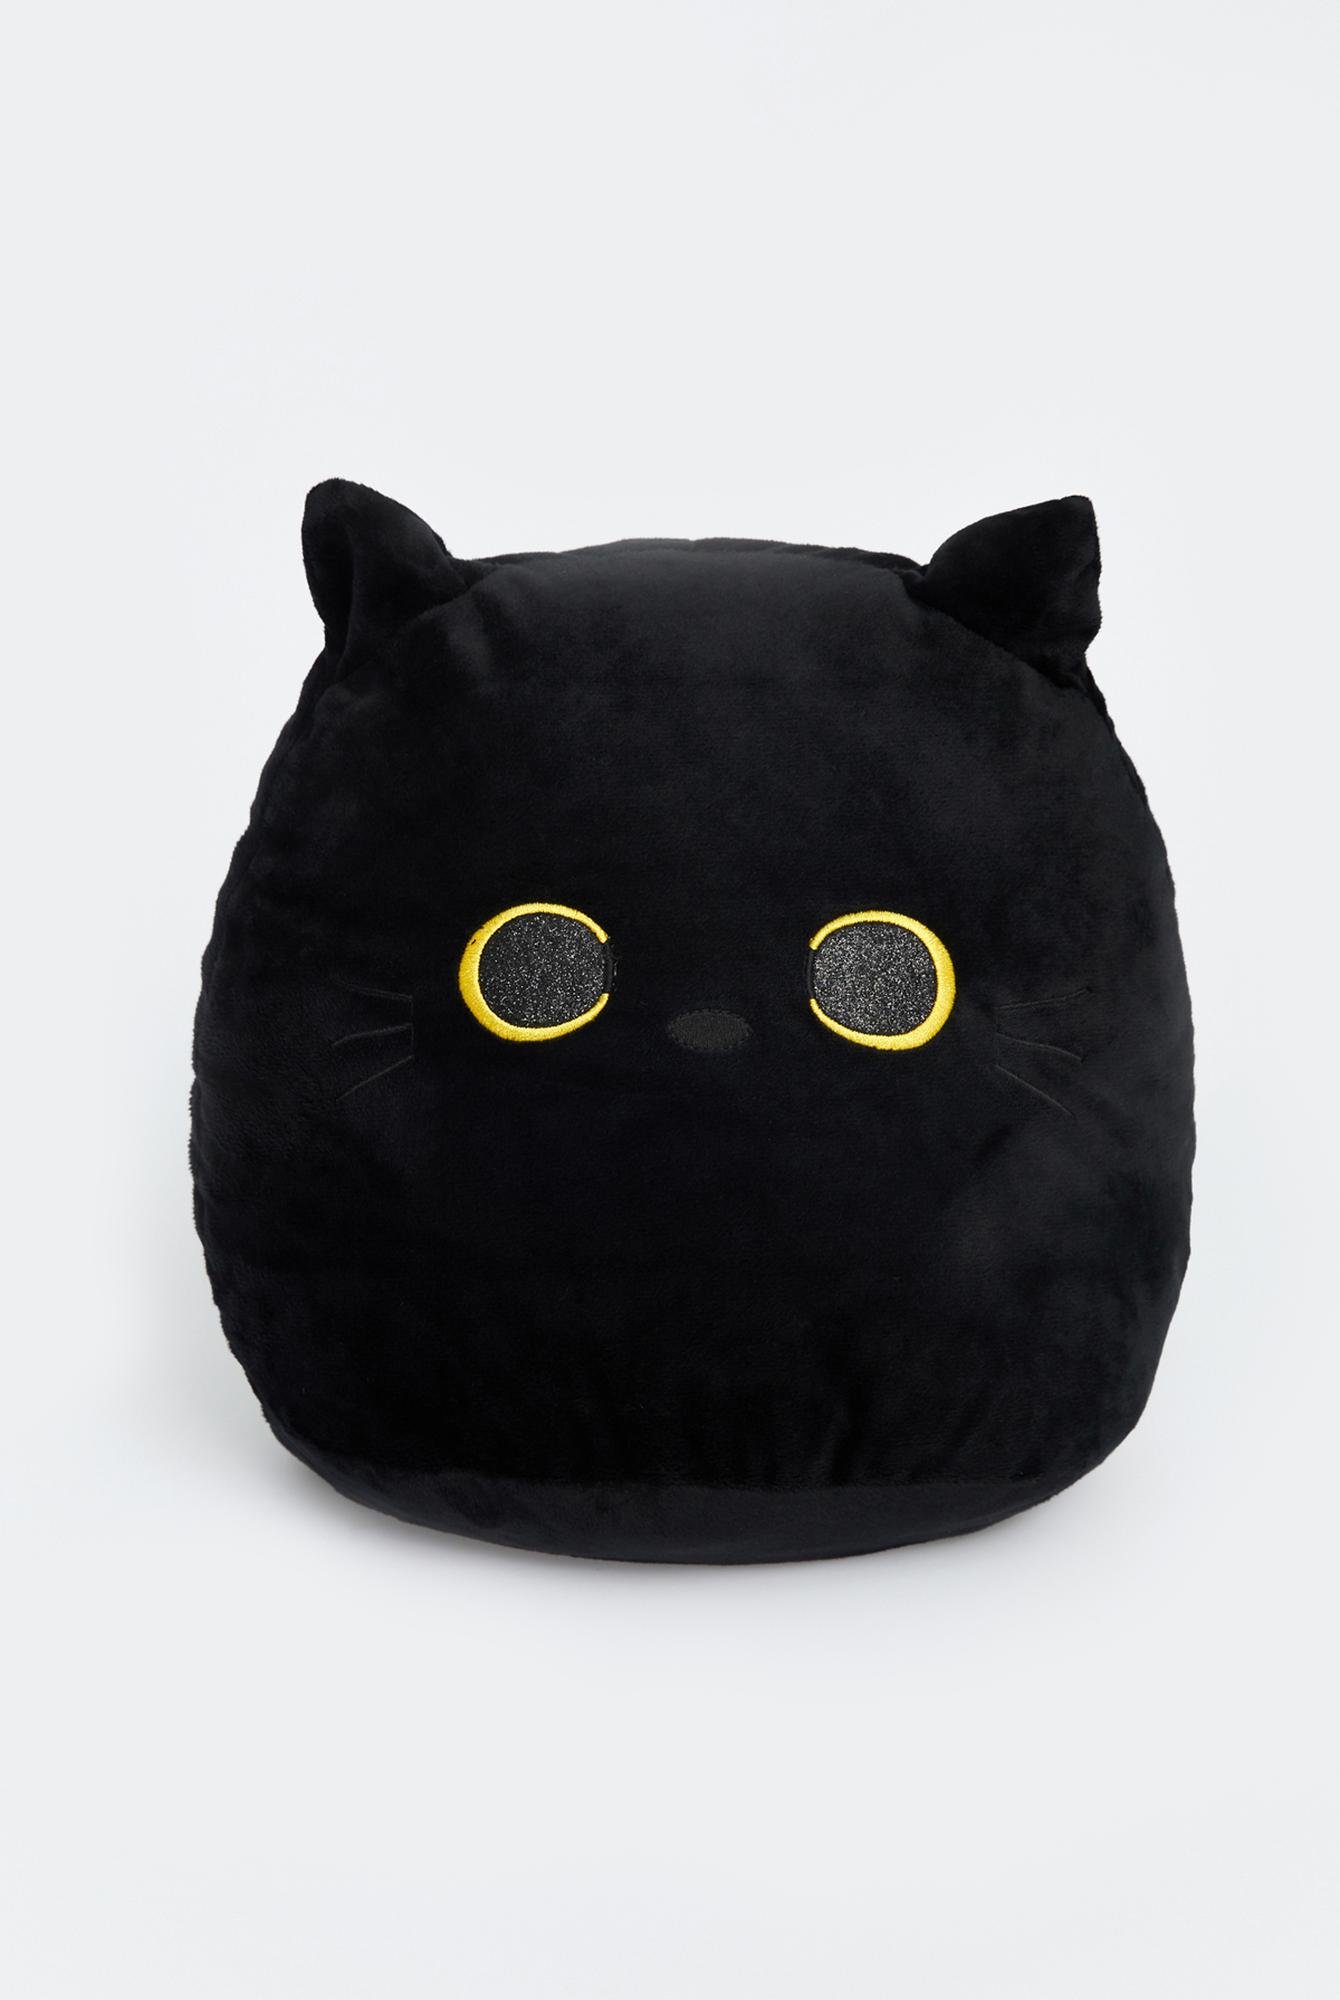  Ecrou Kara Kedi Dekoratif Pelüş Yastık 35 cm Siyah